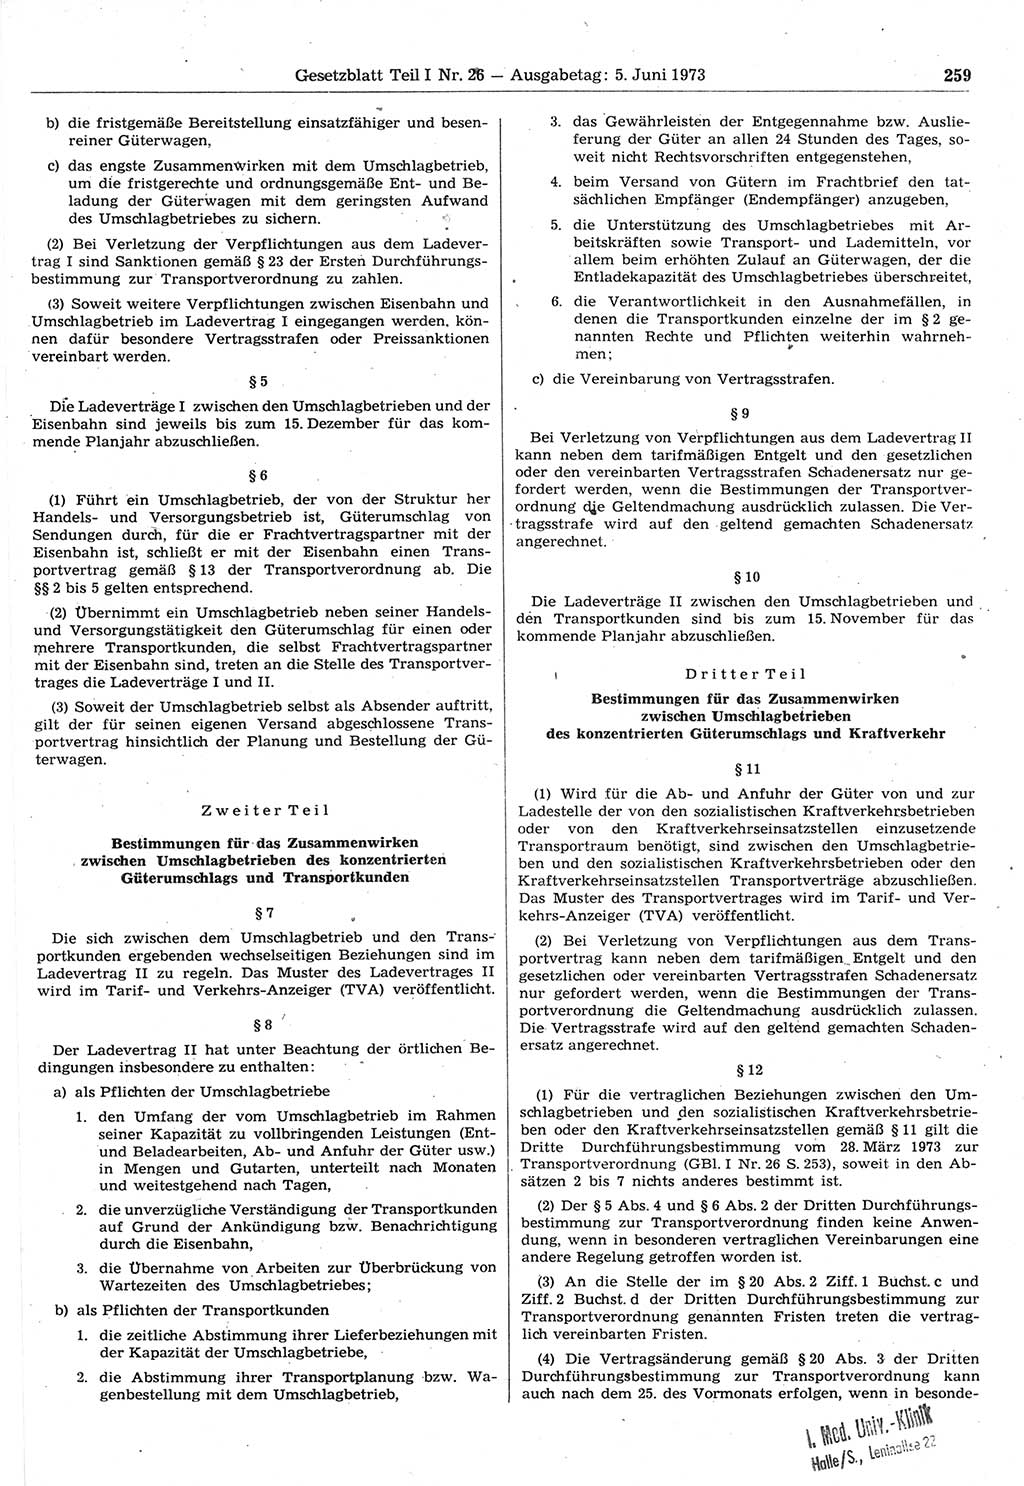 Gesetzblatt (GBl.) der Deutschen Demokratischen Republik (DDR) Teil Ⅰ 1973, Seite 259 (GBl. DDR Ⅰ 1973, S. 259)